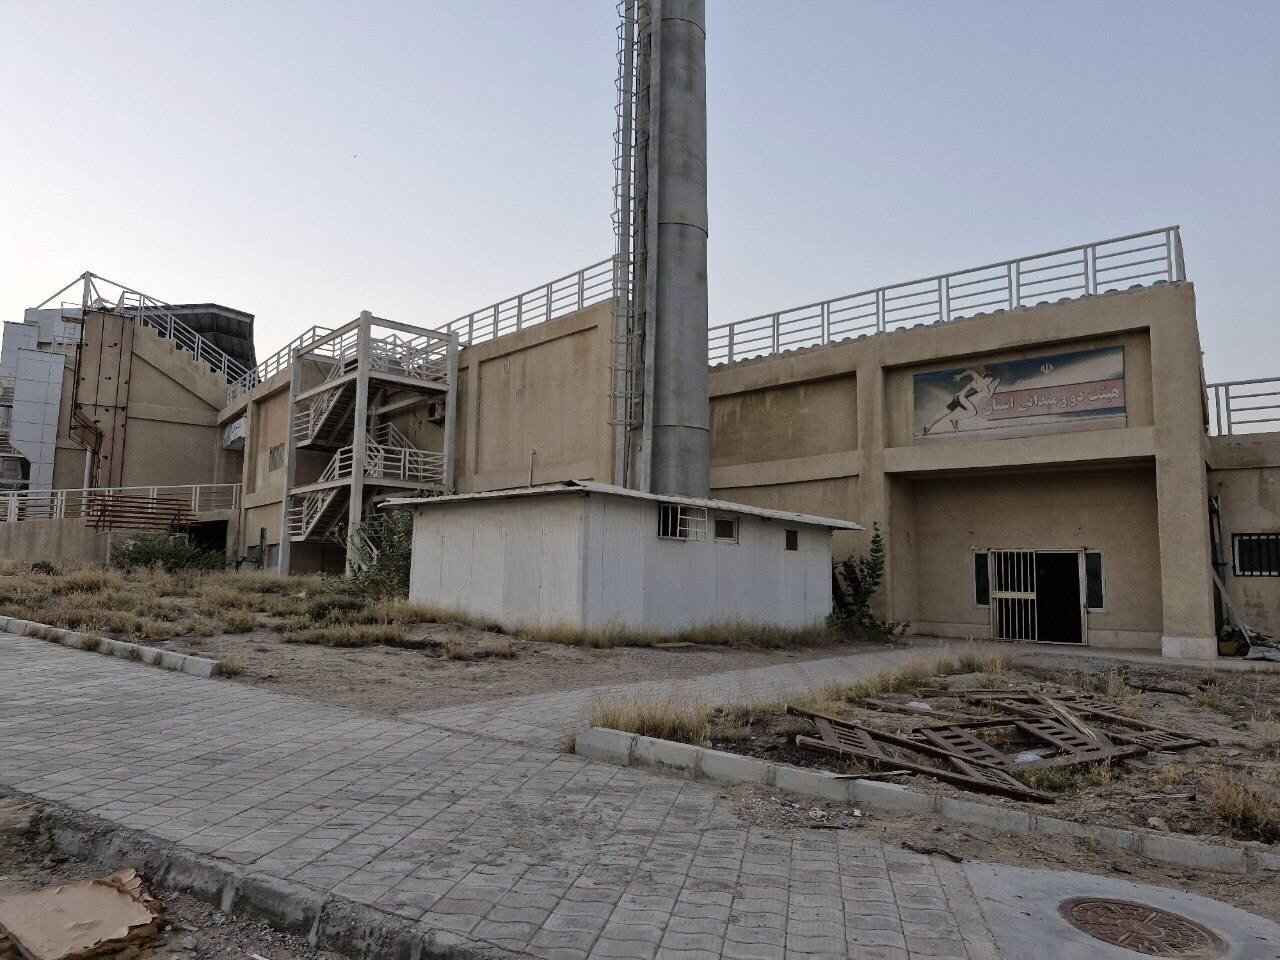 ورزشگاه بندرعباس در خلیج فارس 14 سال پس از افتتاح به صورت ویران شده است